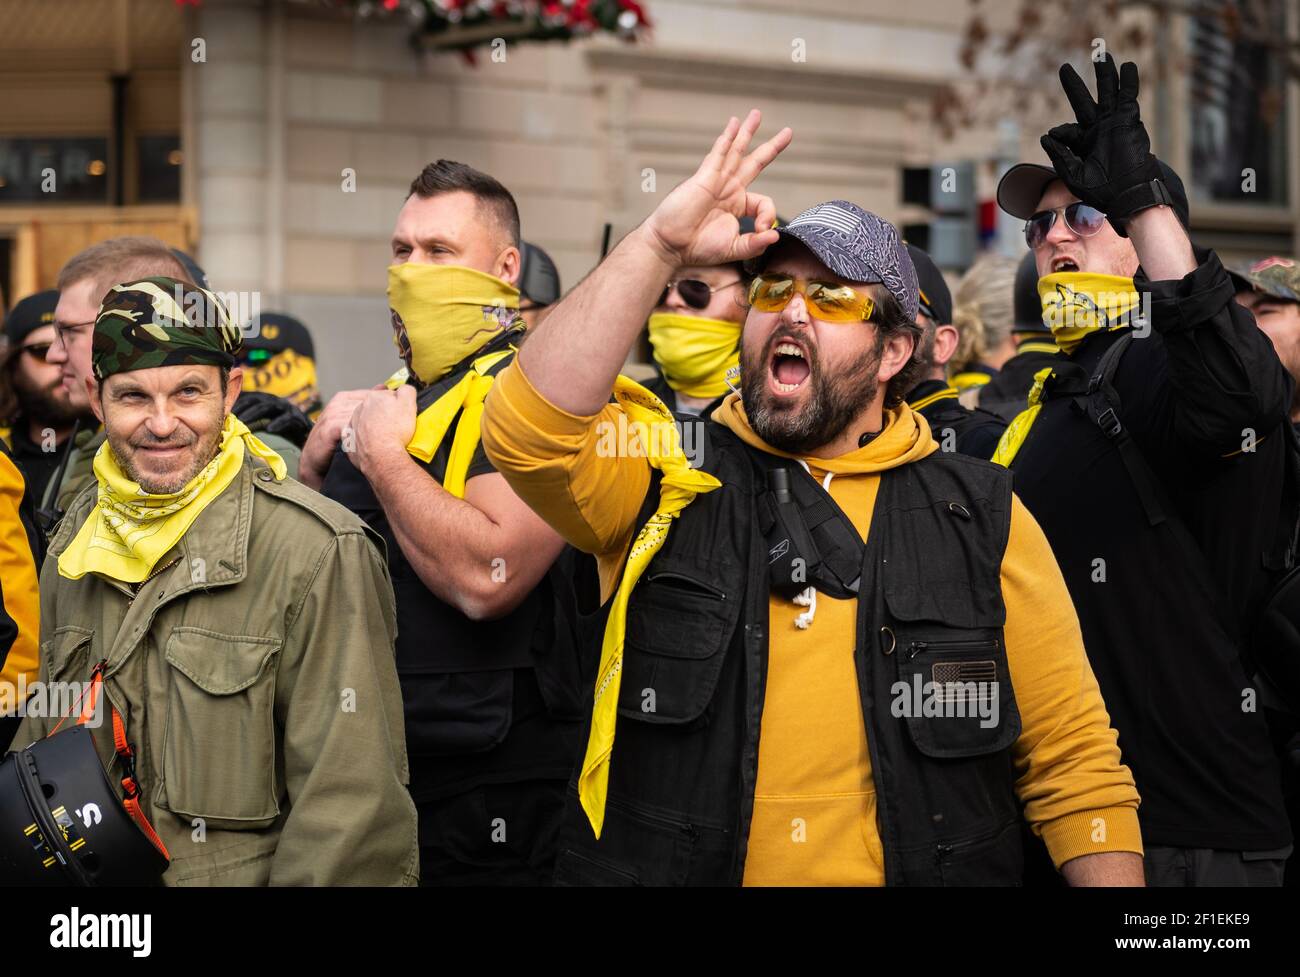 Il gruppo estremista di estrema destra The Proud Boys partecipa al rally "Stop the Steal" il 12 dicembre 2020 a Washington, DC. Foto Stock